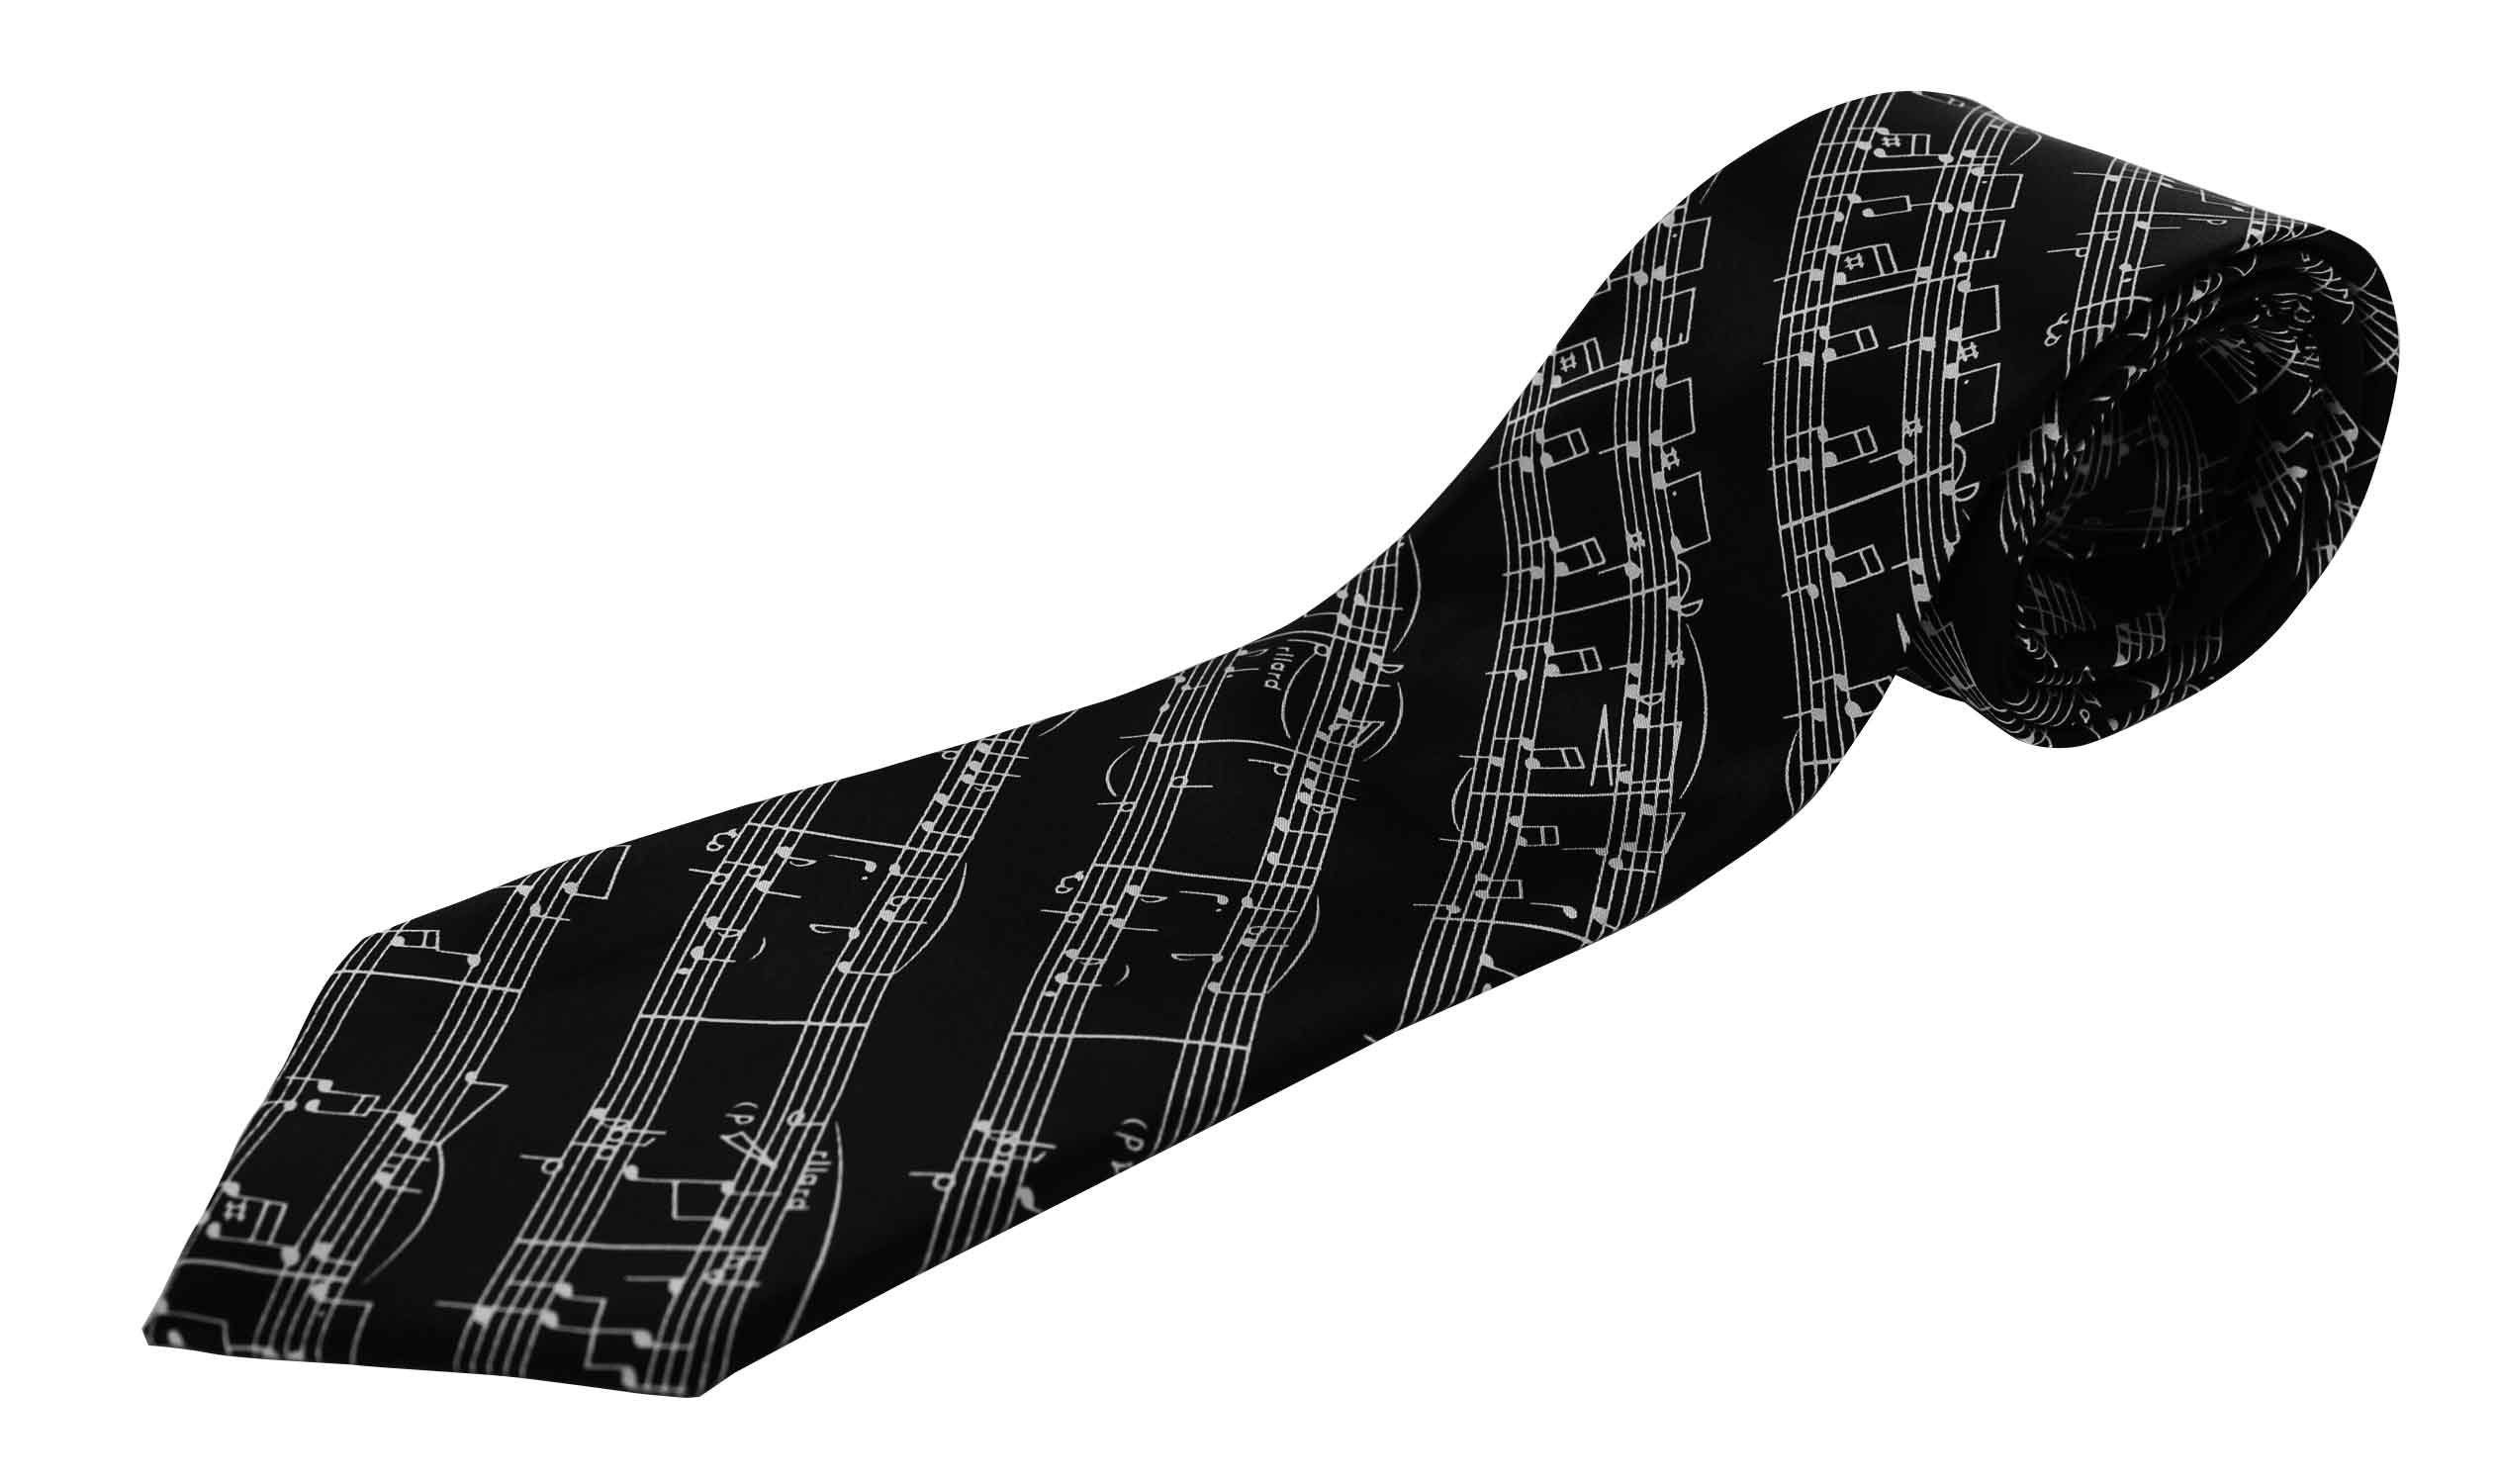 Notenlinien Musiker schwarz für Krawatte Krawatte mugesh